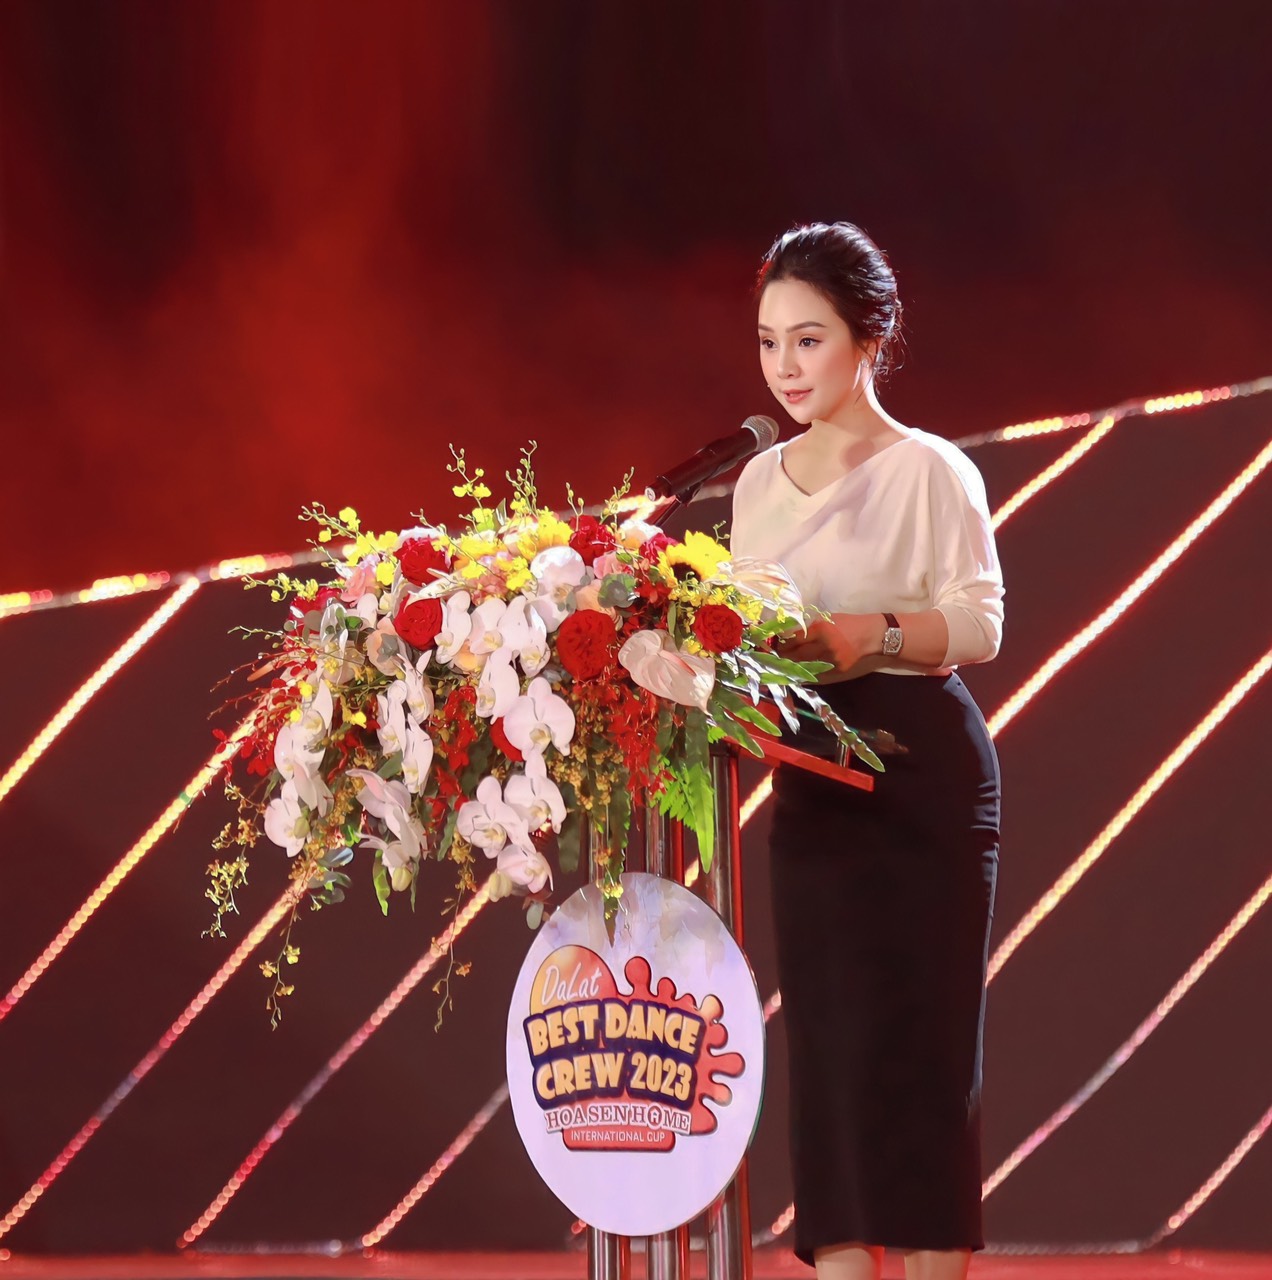 Dalat Best Dance Crew 2023 - Hoa Sen Home International Cup tạo nên “cú hích” bùng nổ cho nền vũ đạo Việt Nam - Ảnh 4.